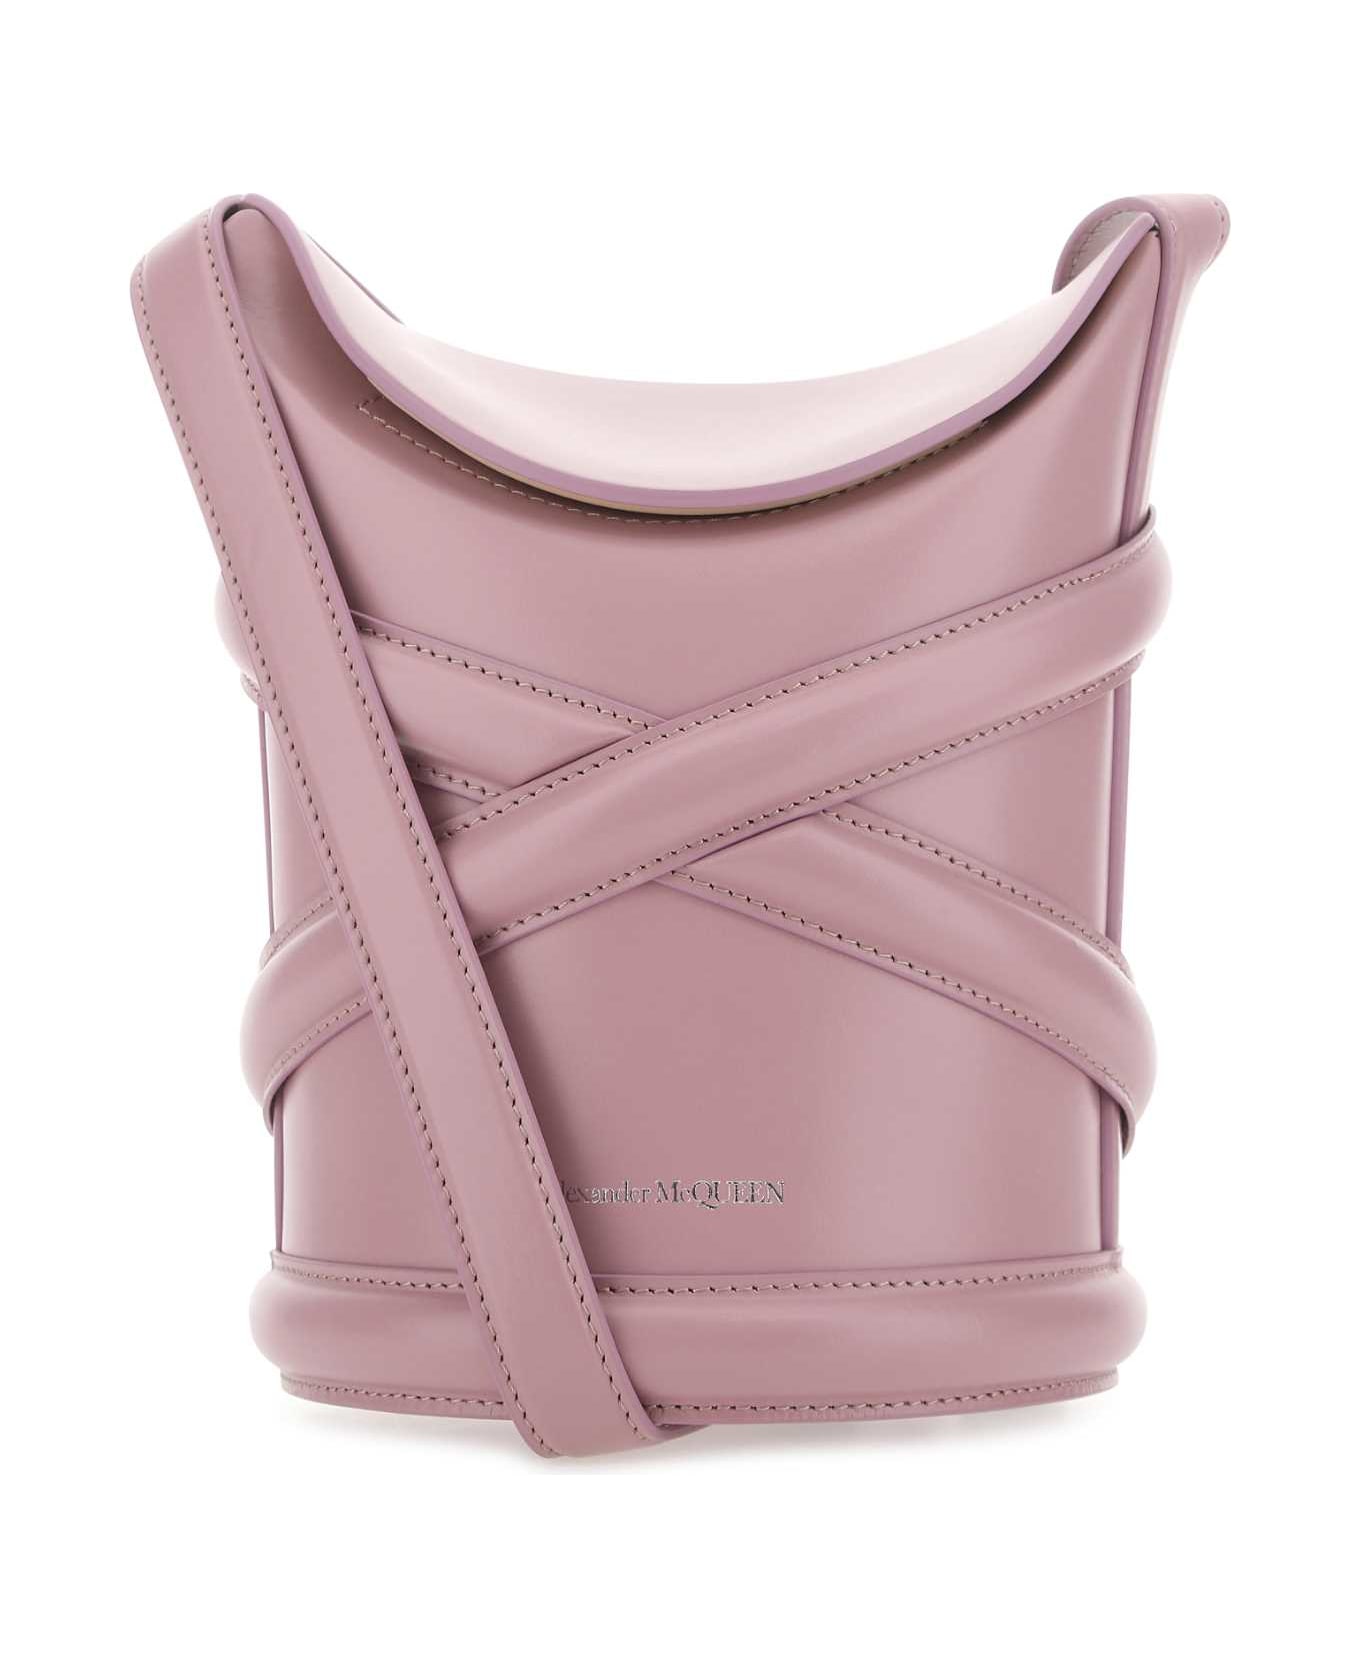 Alexander McQueen Dark Pink Leather The Curve Bucket Bag - 5618